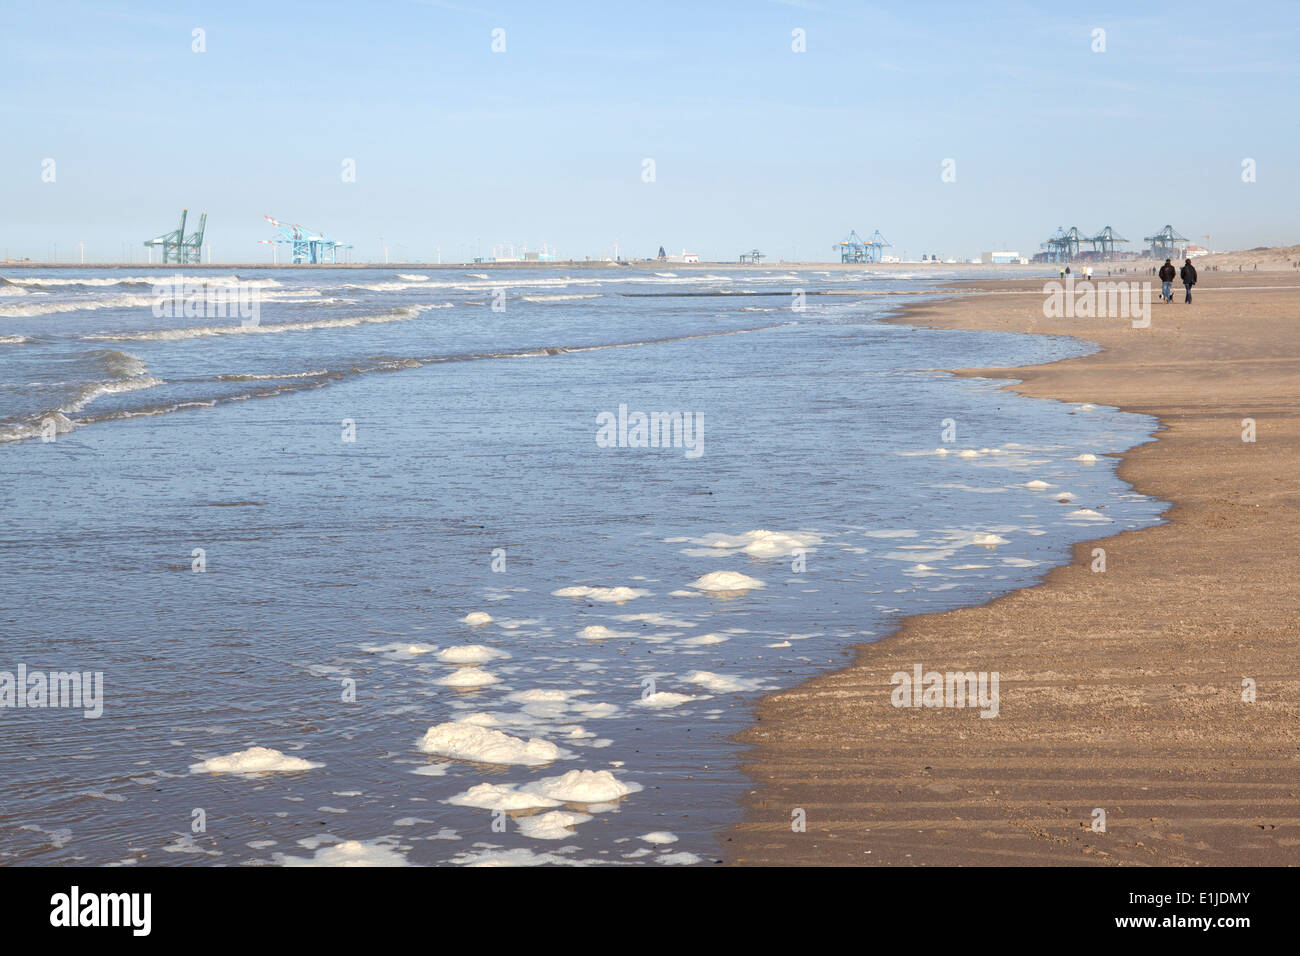 Vista in lontananza matura per passeggiare sulla spiaggia con gru portuali sull orizzonte, Ostenda, Belgio Foto Stock